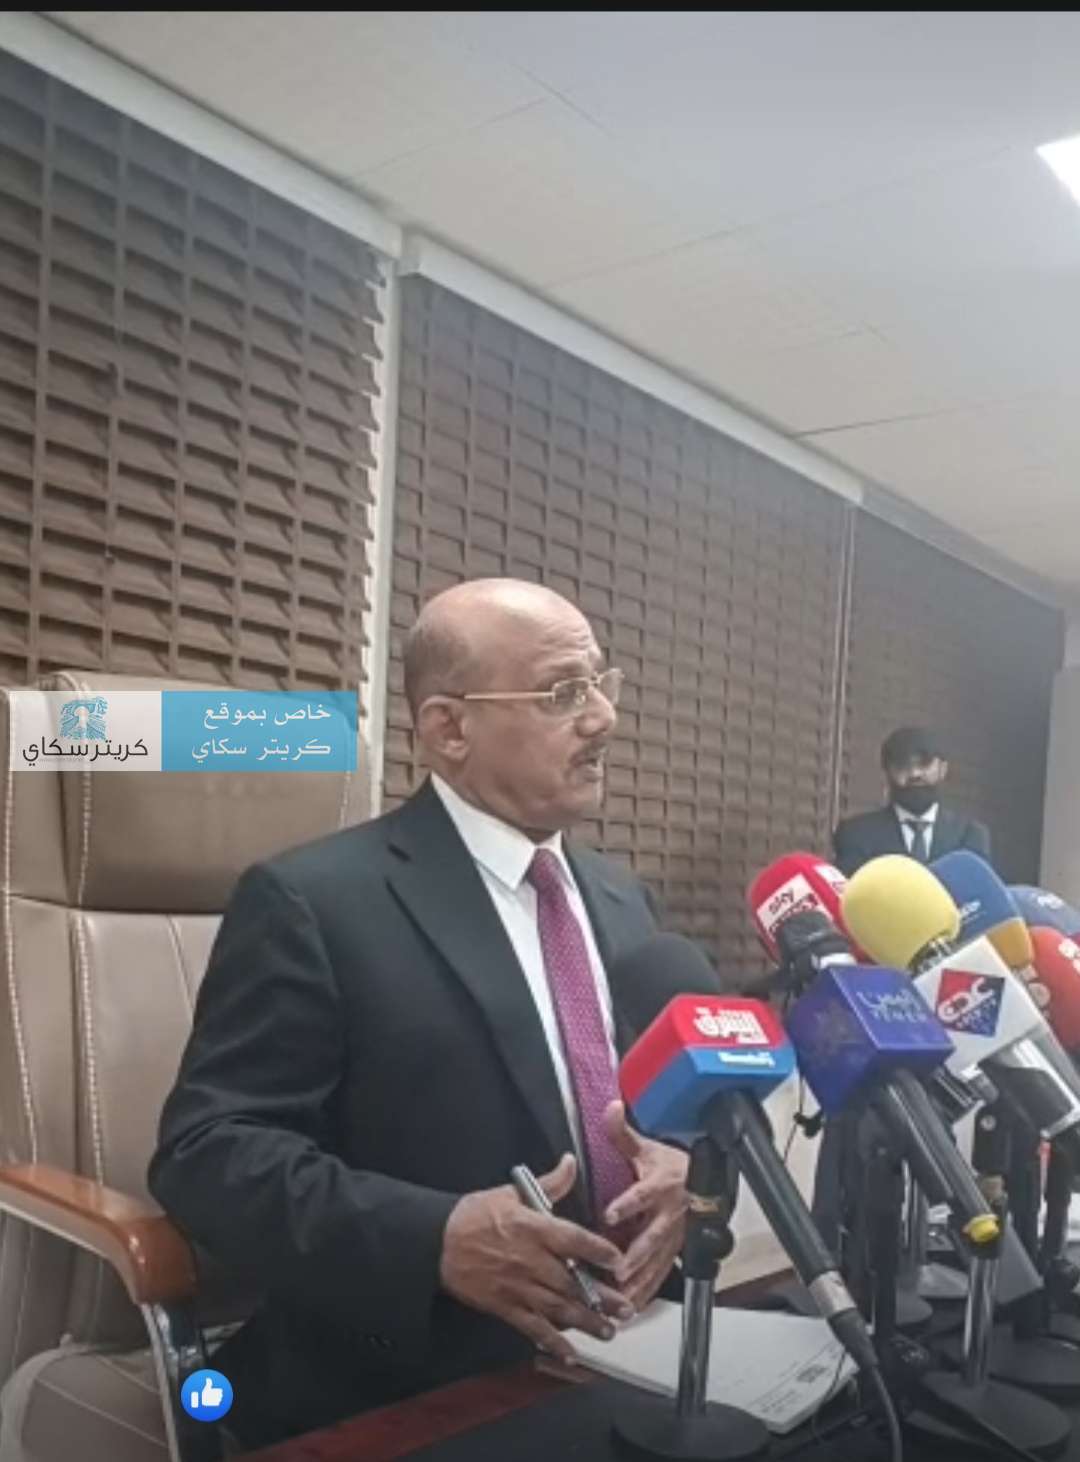 عاجل:محافظ البنك المركزي يكشف عن اجراءات غير متوقعة ضد اكبر البنوك في اليمن وهذا ماسيحدث